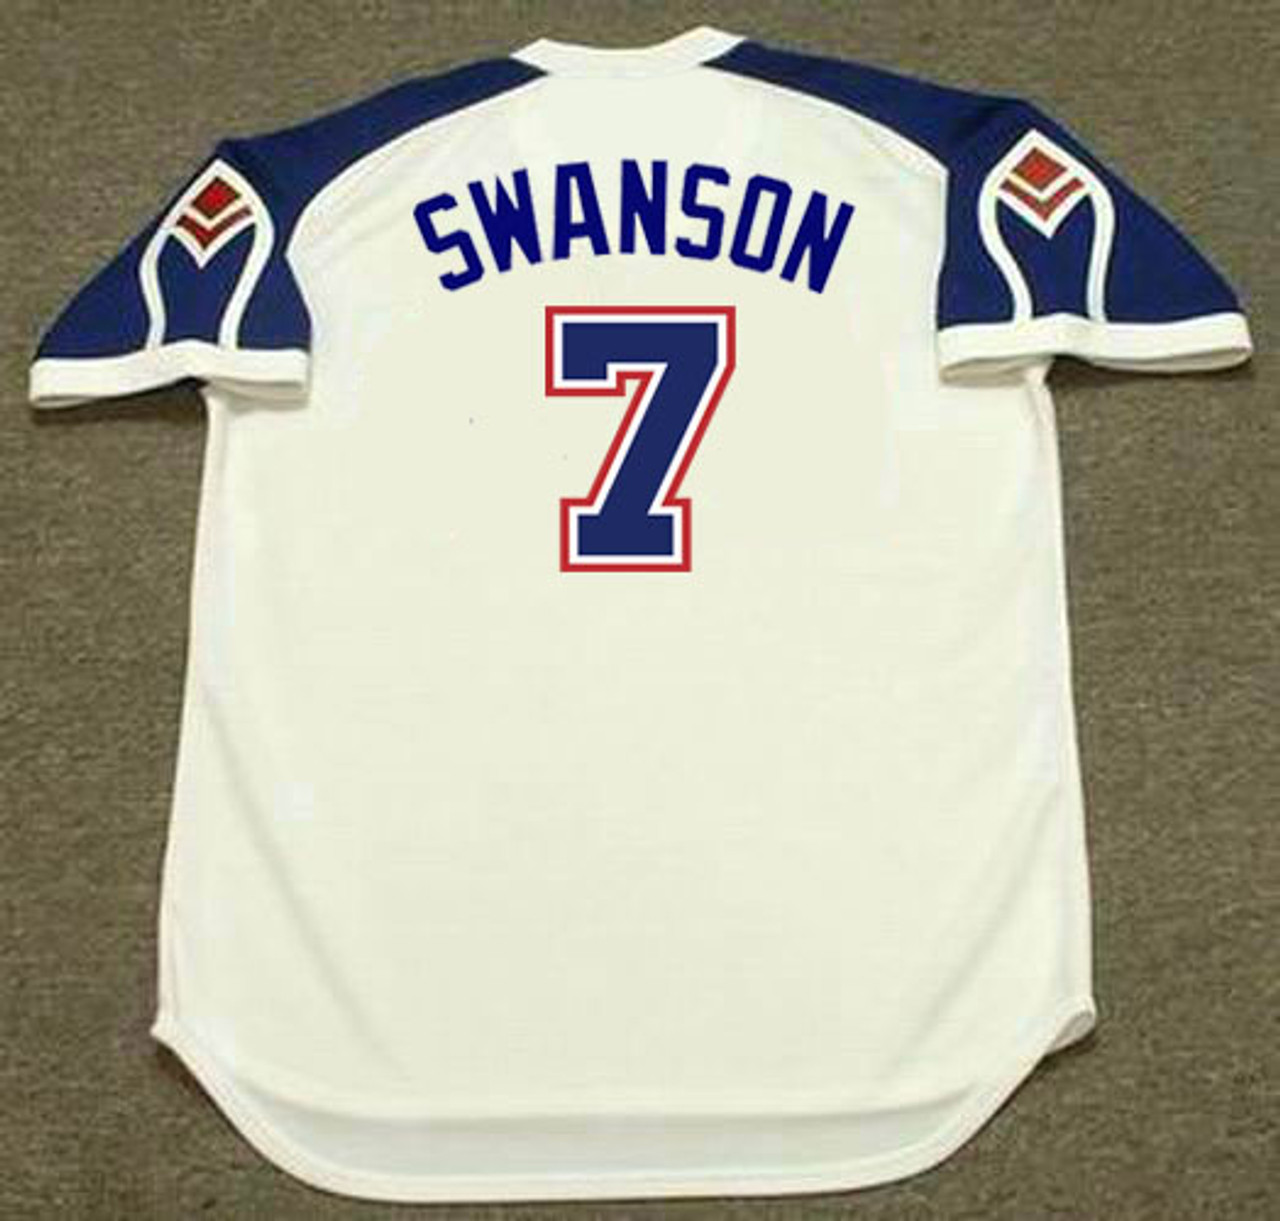 swanson baseball jersey